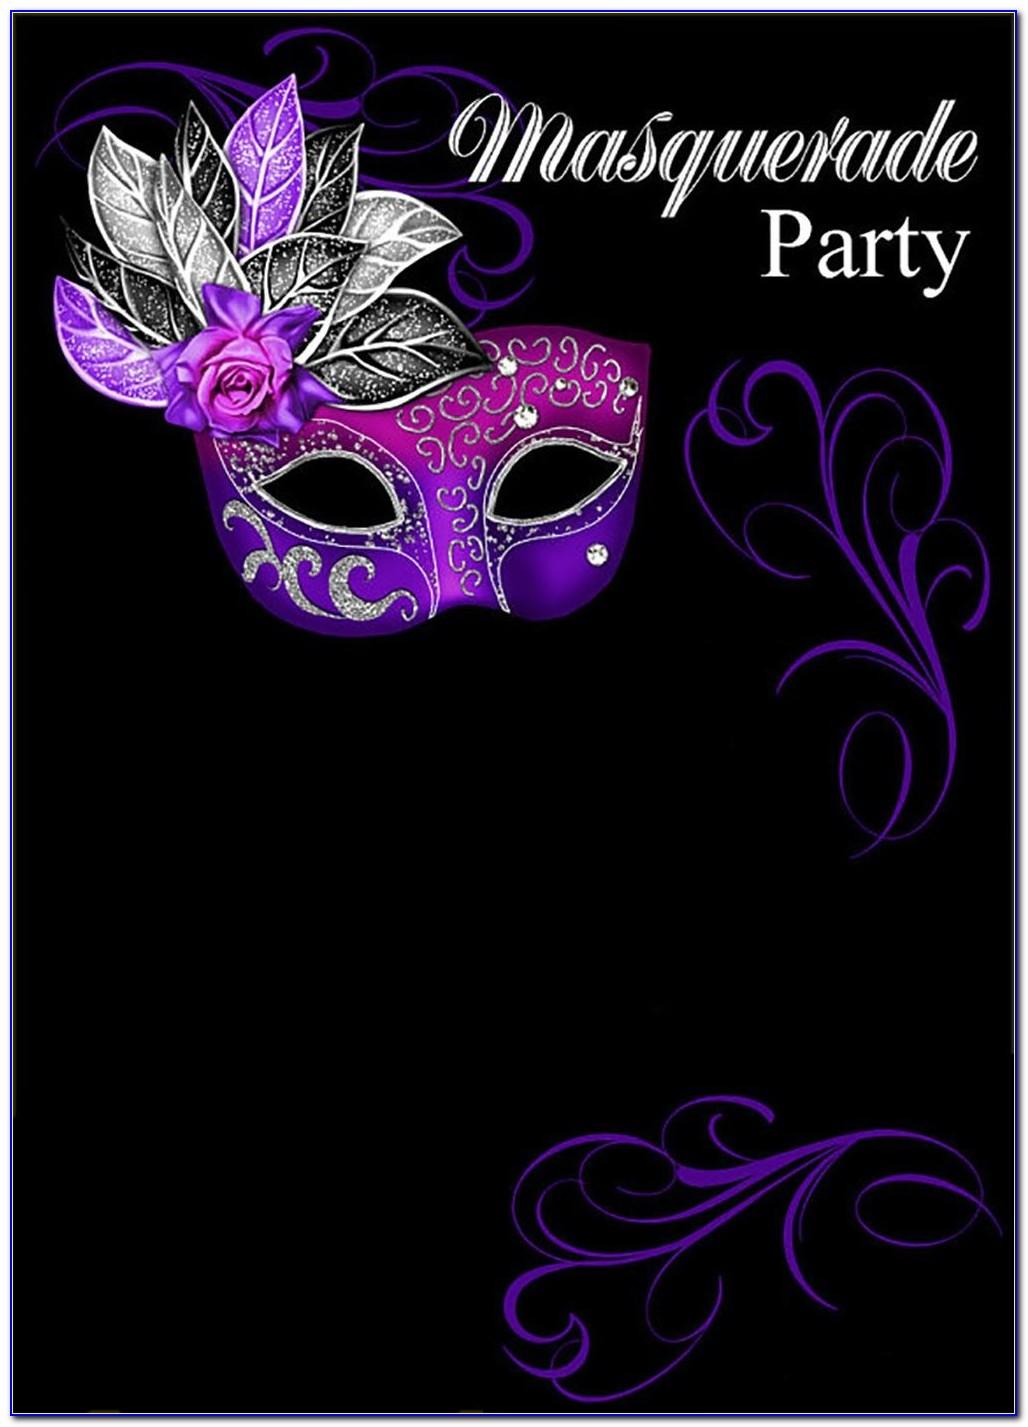 Masquerade Ball Invitation Templates Free